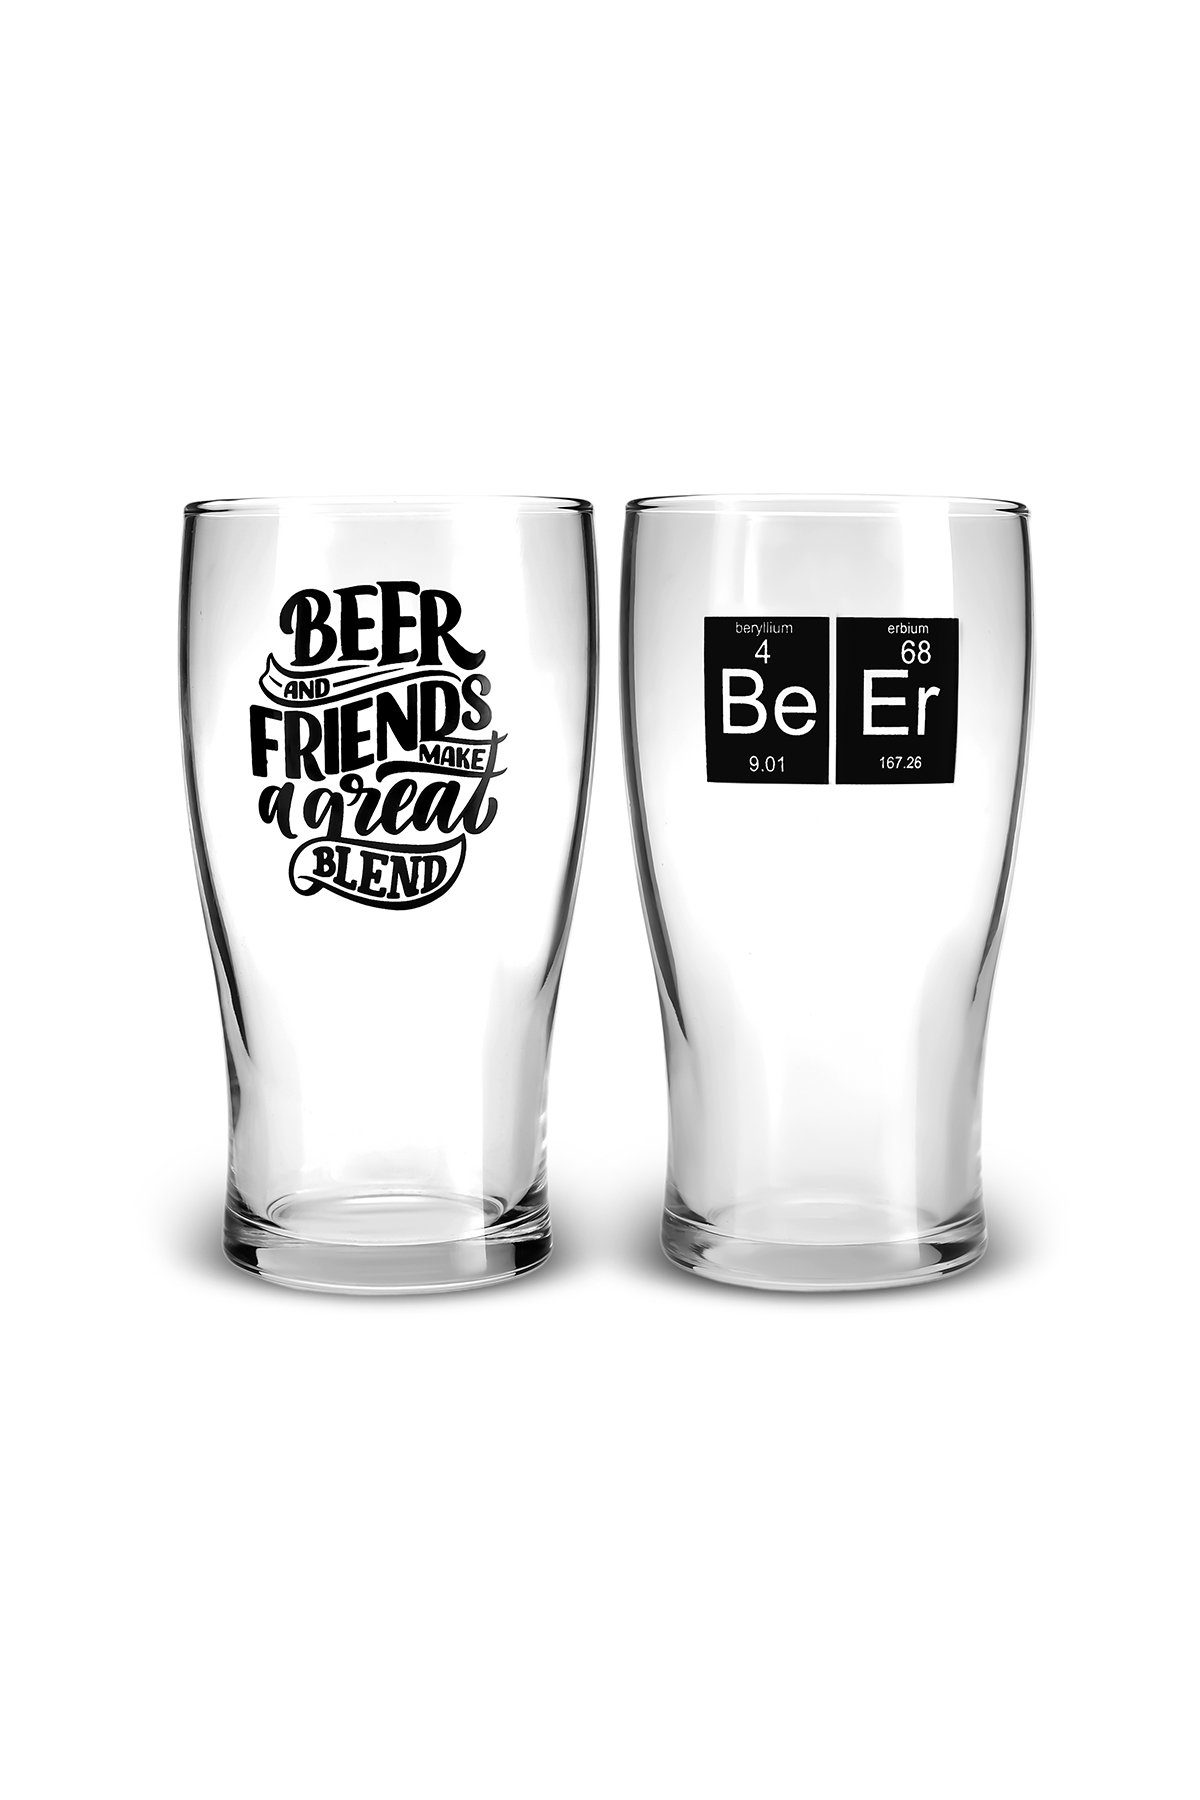 2 Glas, Glas Personen, Beerbecher für Bierglas-set 454ml Karaca